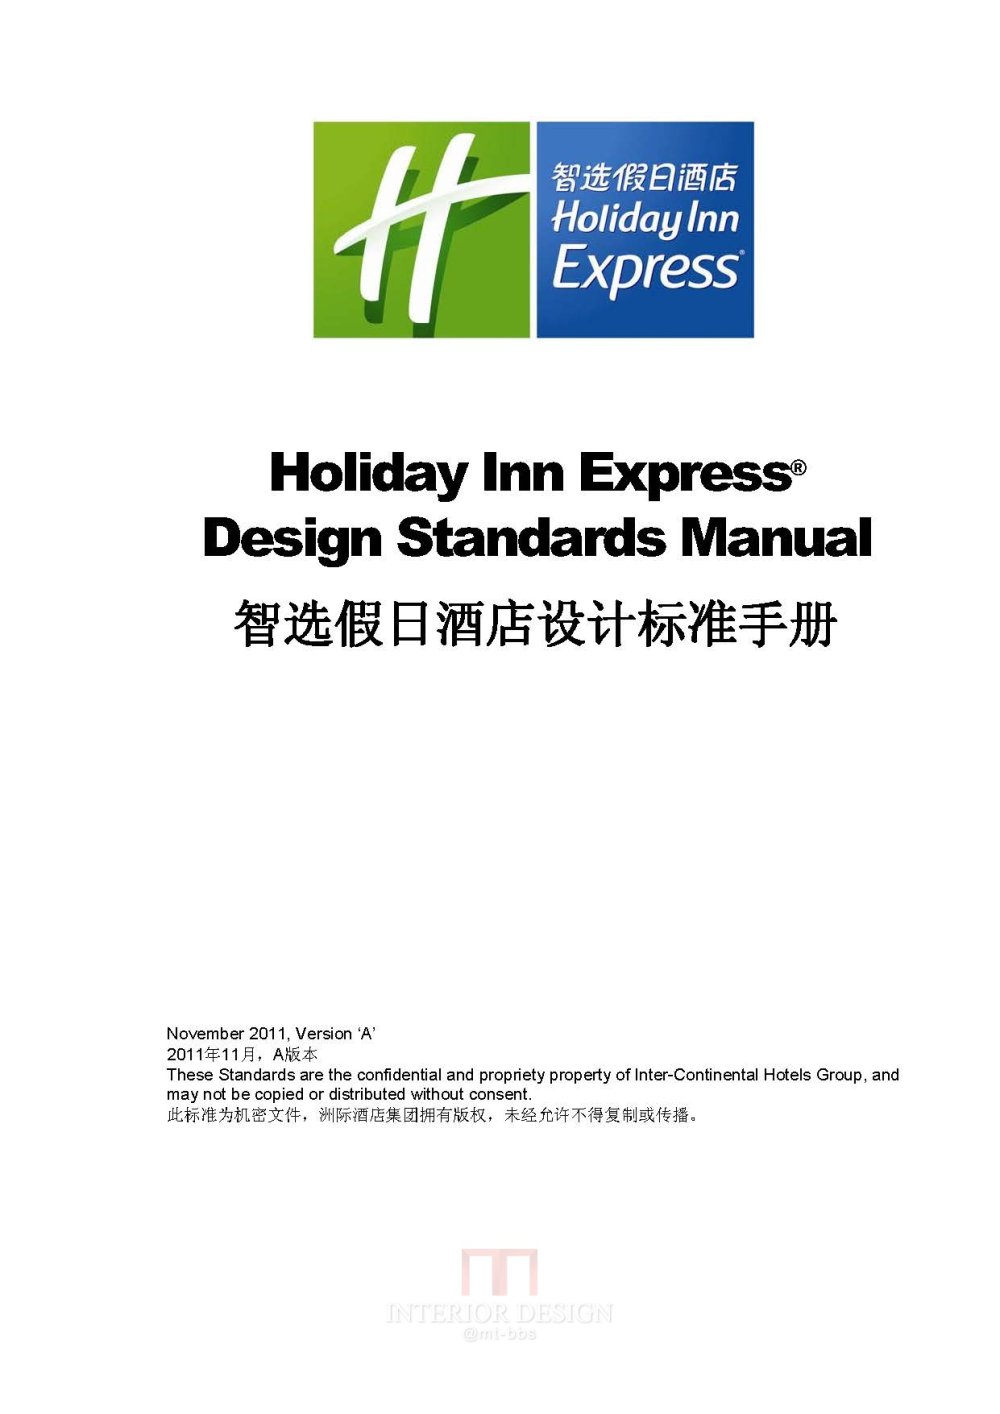 国际品牌酒店设计标准-洲际快捷酒店标准_页面提取自－2011.11 Holiday Inn Express设计标准手册.jpg